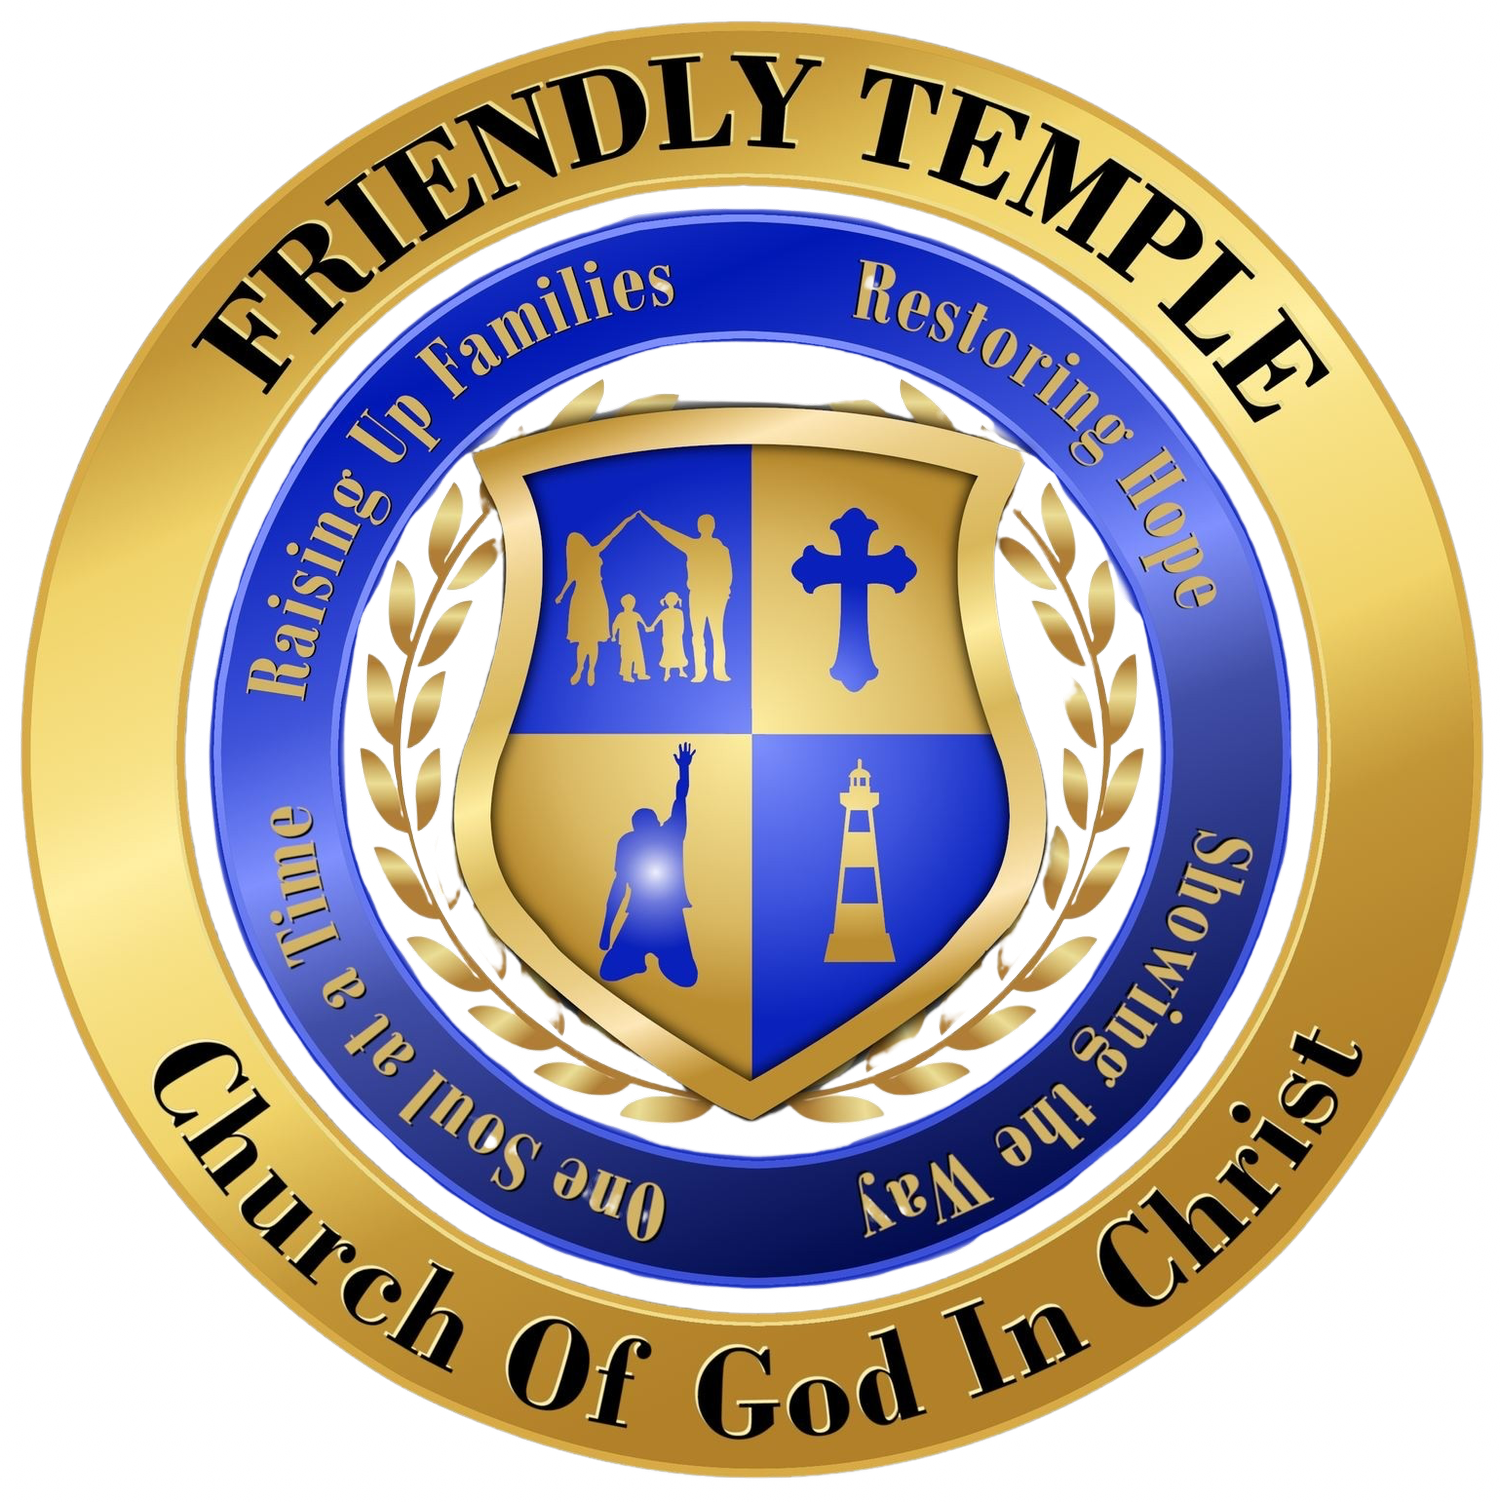 Friendly Temple Church of God in Christ | A Faith-Driven &amp; Bible Teaching Church